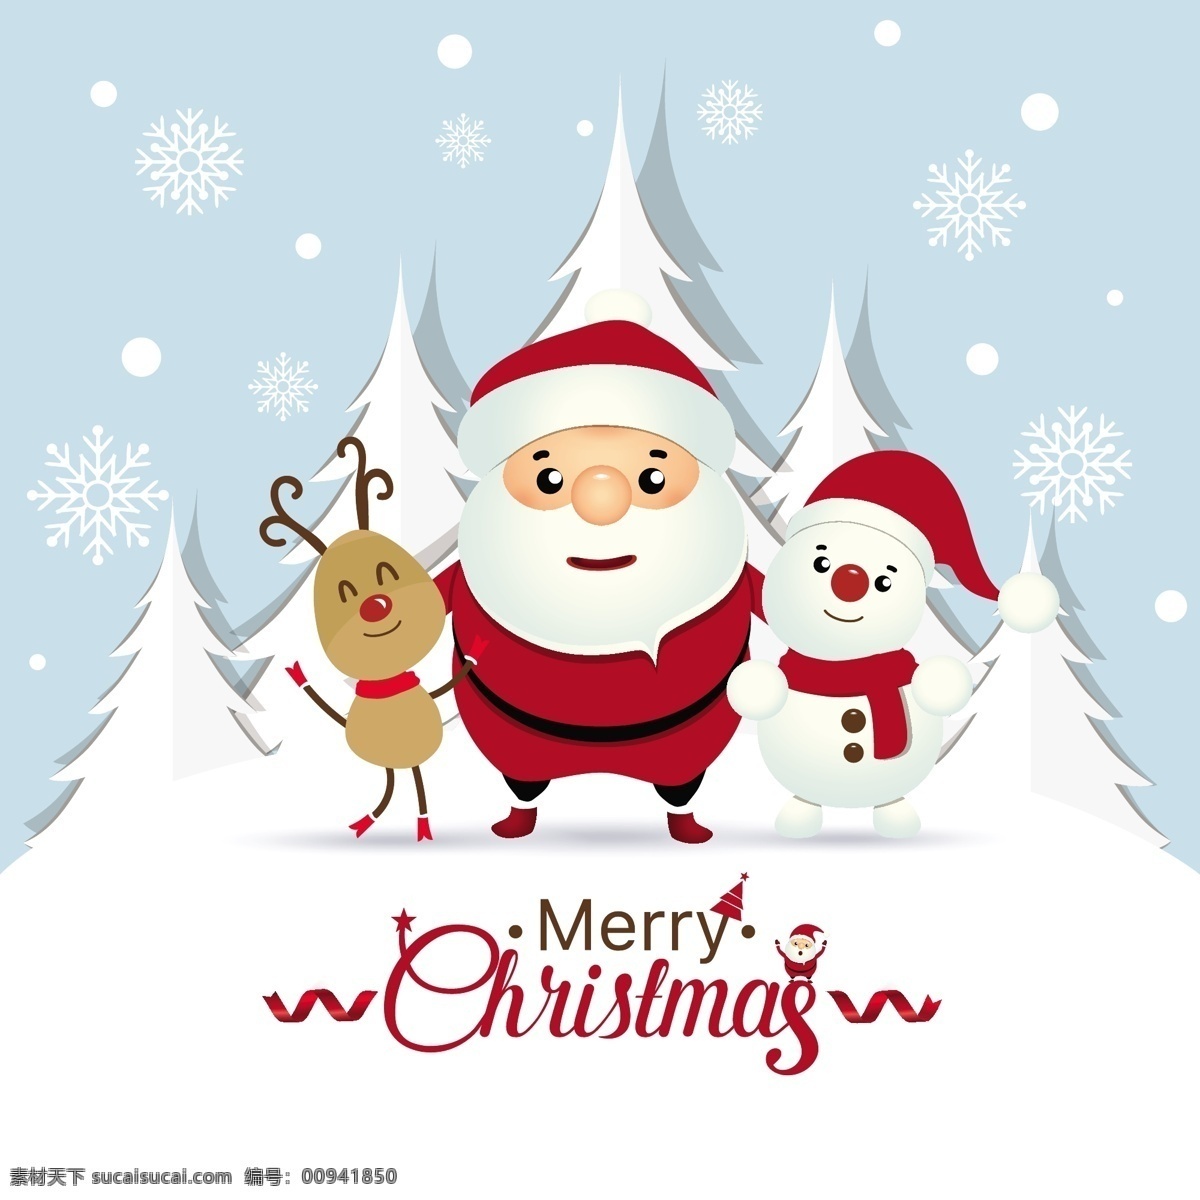 圣诞贺卡 圣诞老人 驯鹿 矢量 插图 2018 圣诞节 节日素材 圣诞 圣诞素材 圣诞元素 矢量插图